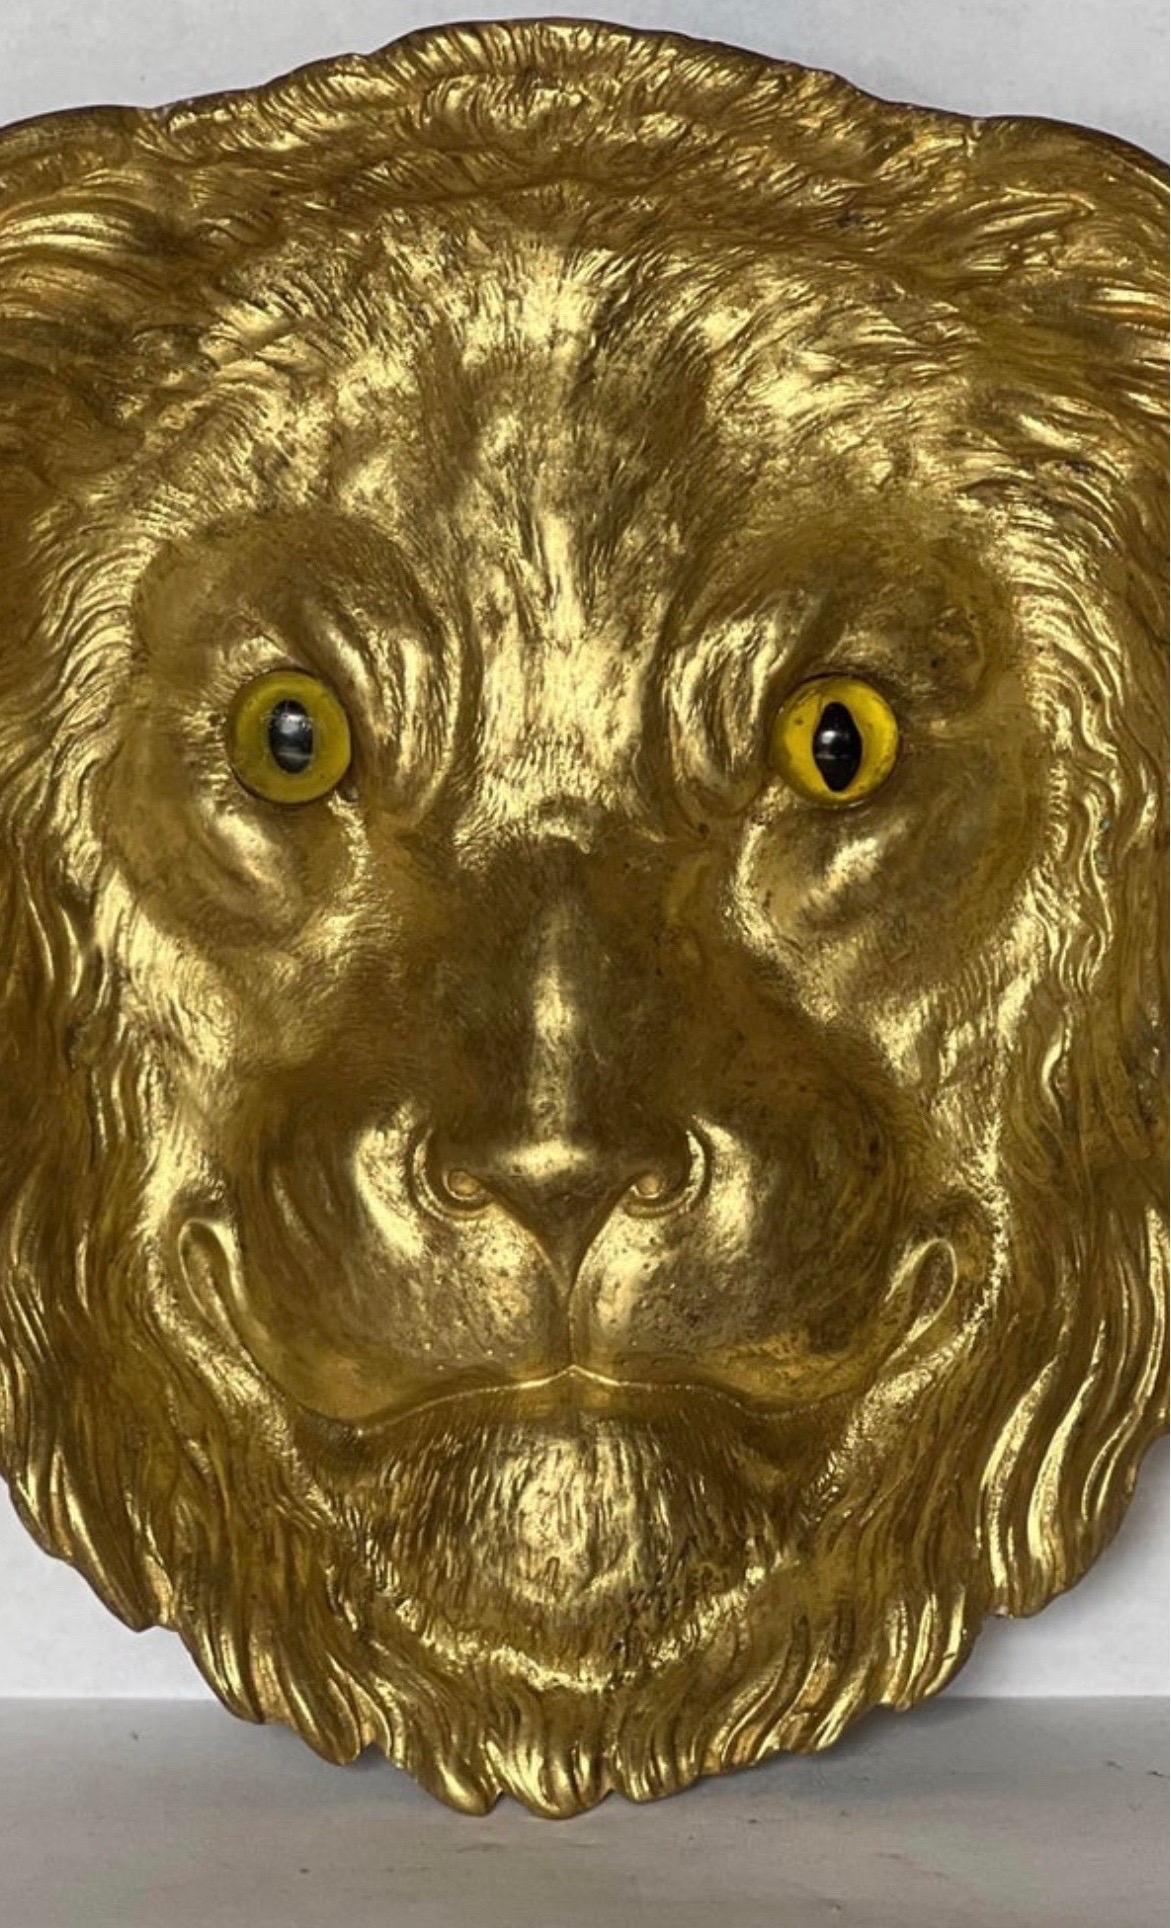 Un très beau et rare cendrier ou attrape-tout français en forme de tête de lion avec des yeux en verre. Pièce très unique avec une certaine usure et une perte mineure au verso - non observée au repos.